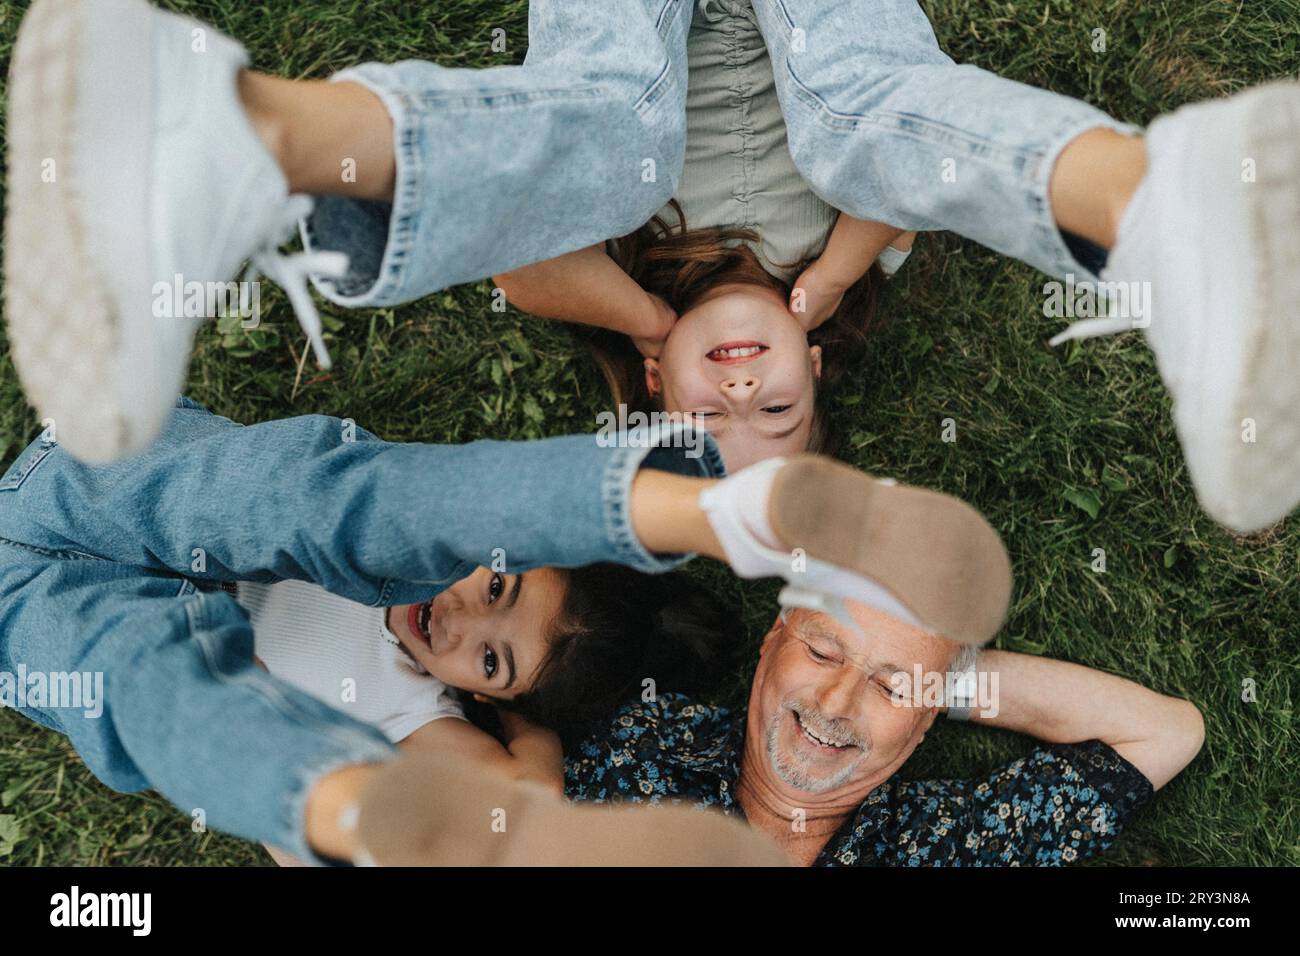 Direkt über dem Blick auf einen älteren Mann mit Enkelinnen, die auf Gras liegen Stockfoto